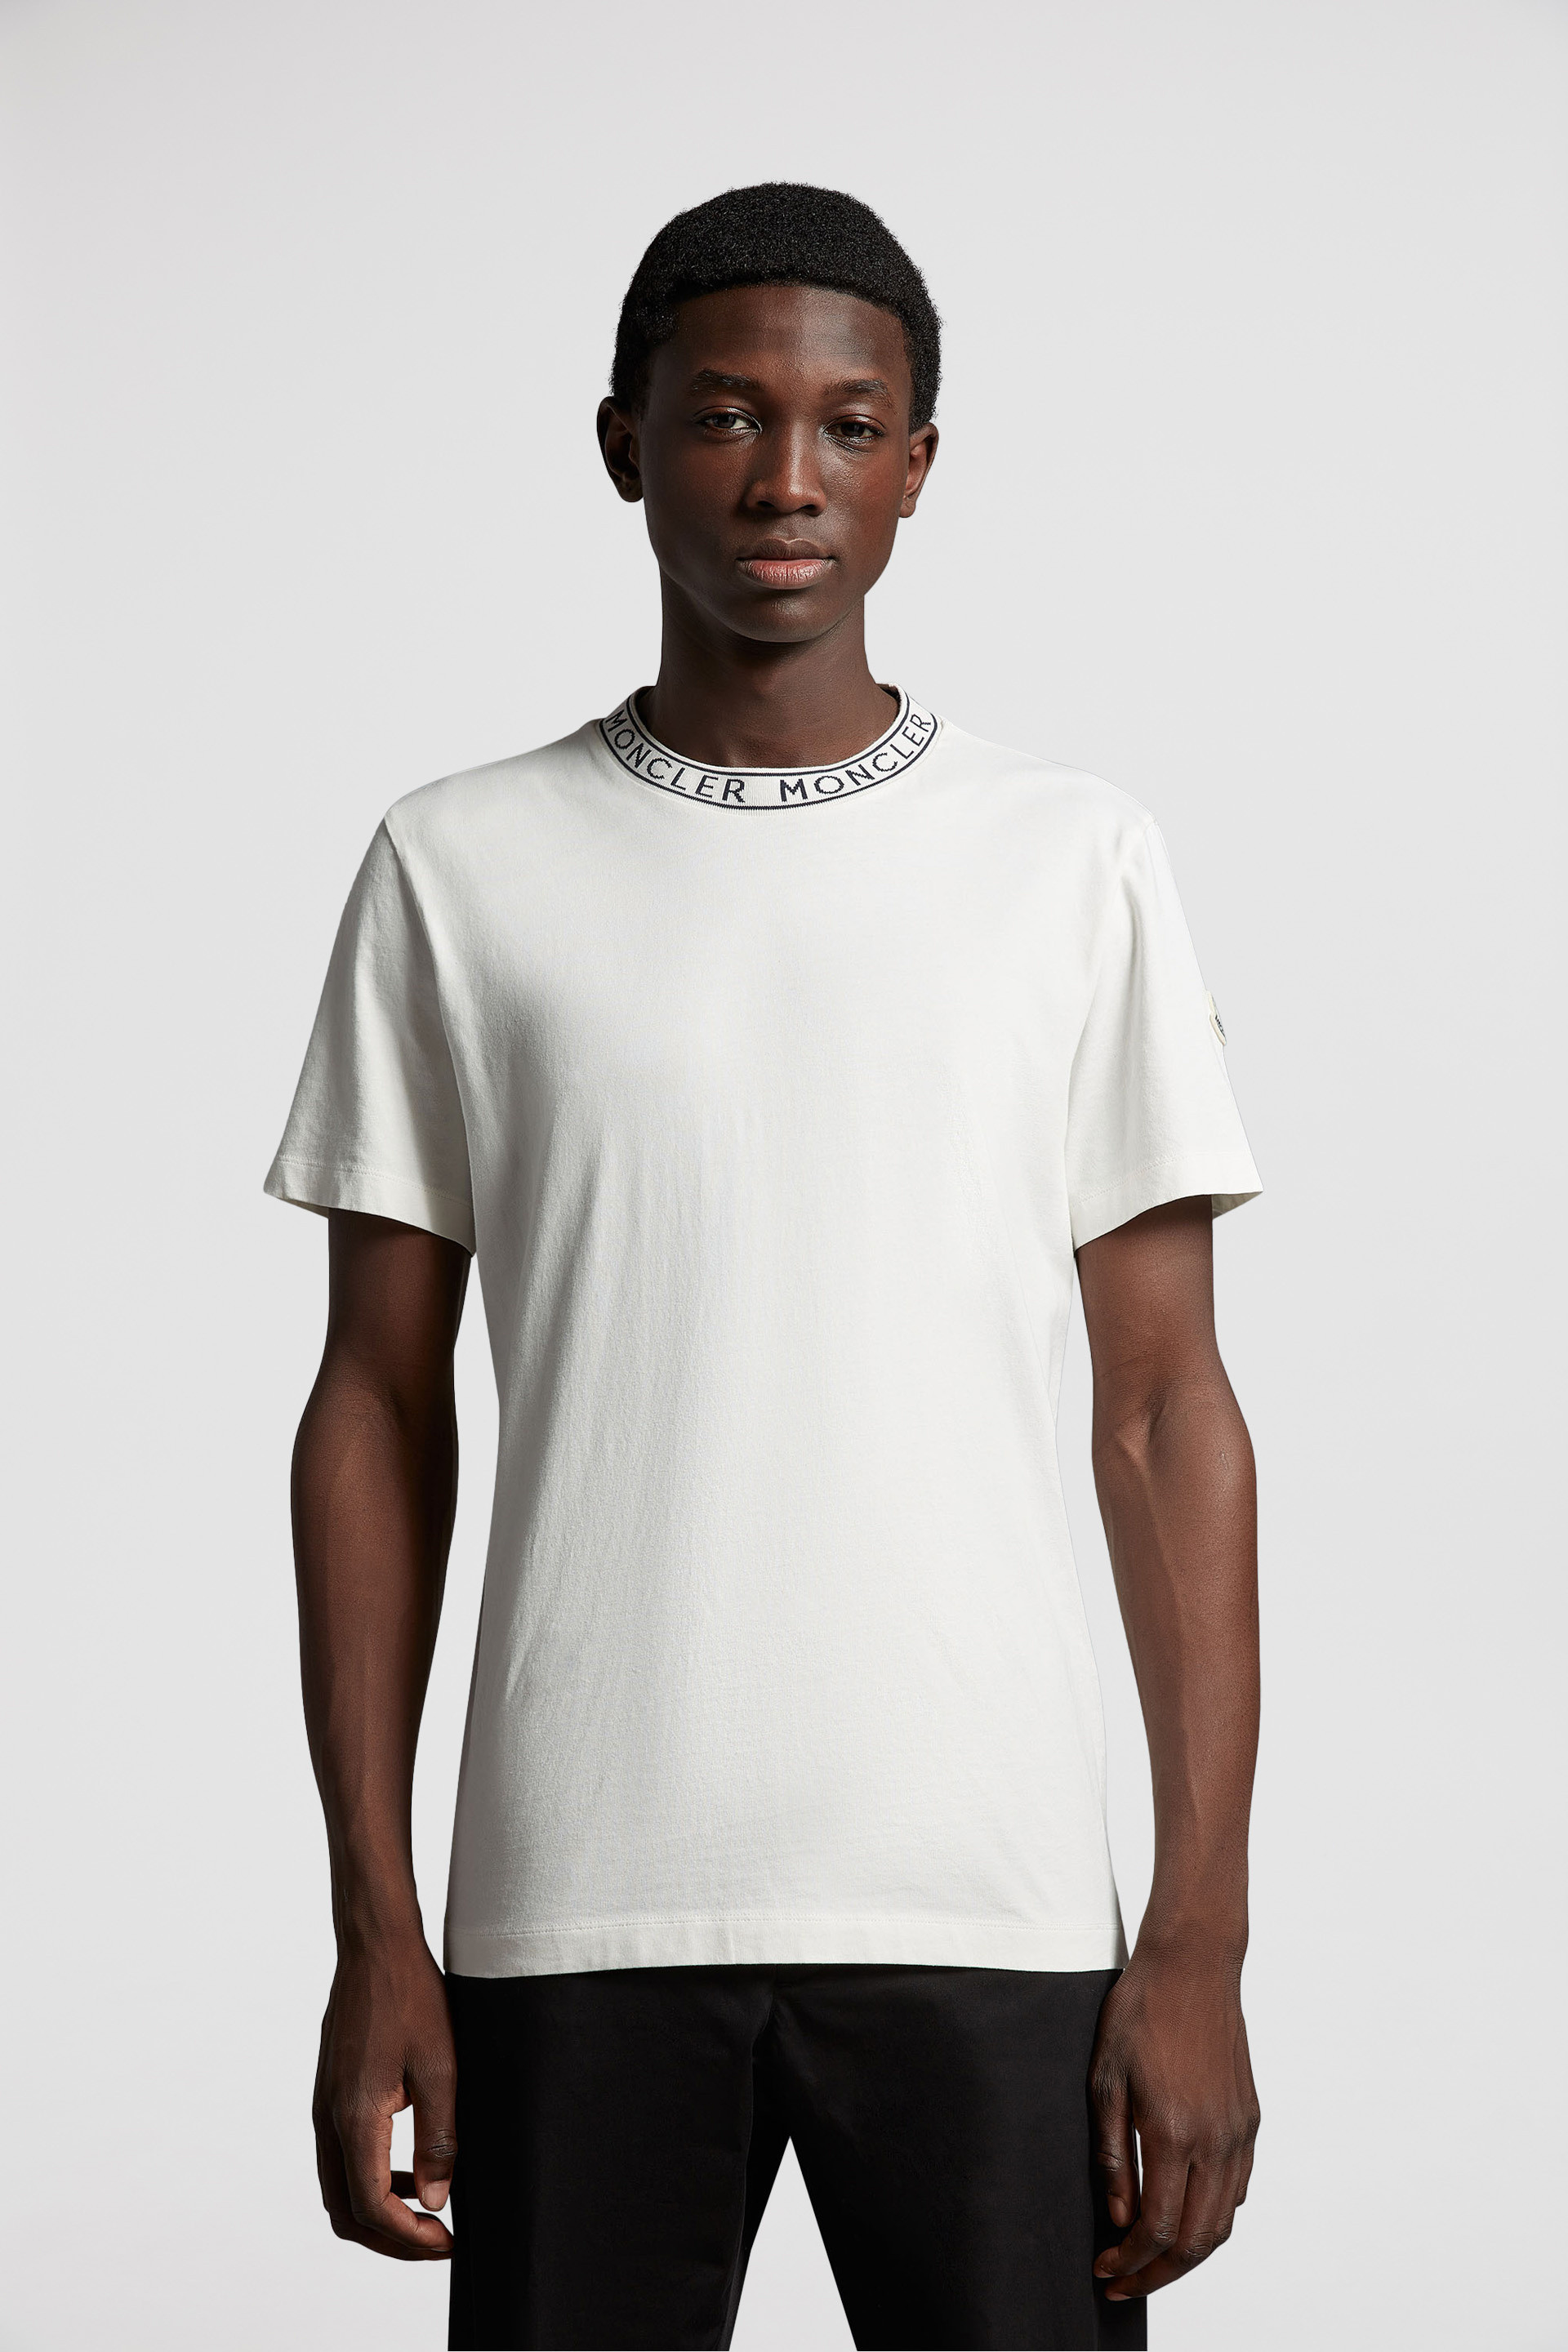 ★最新作★ 高級ライン MONCLER Tシャツ XL モンクレール ホワイト売り切れ欠品人気モデルです